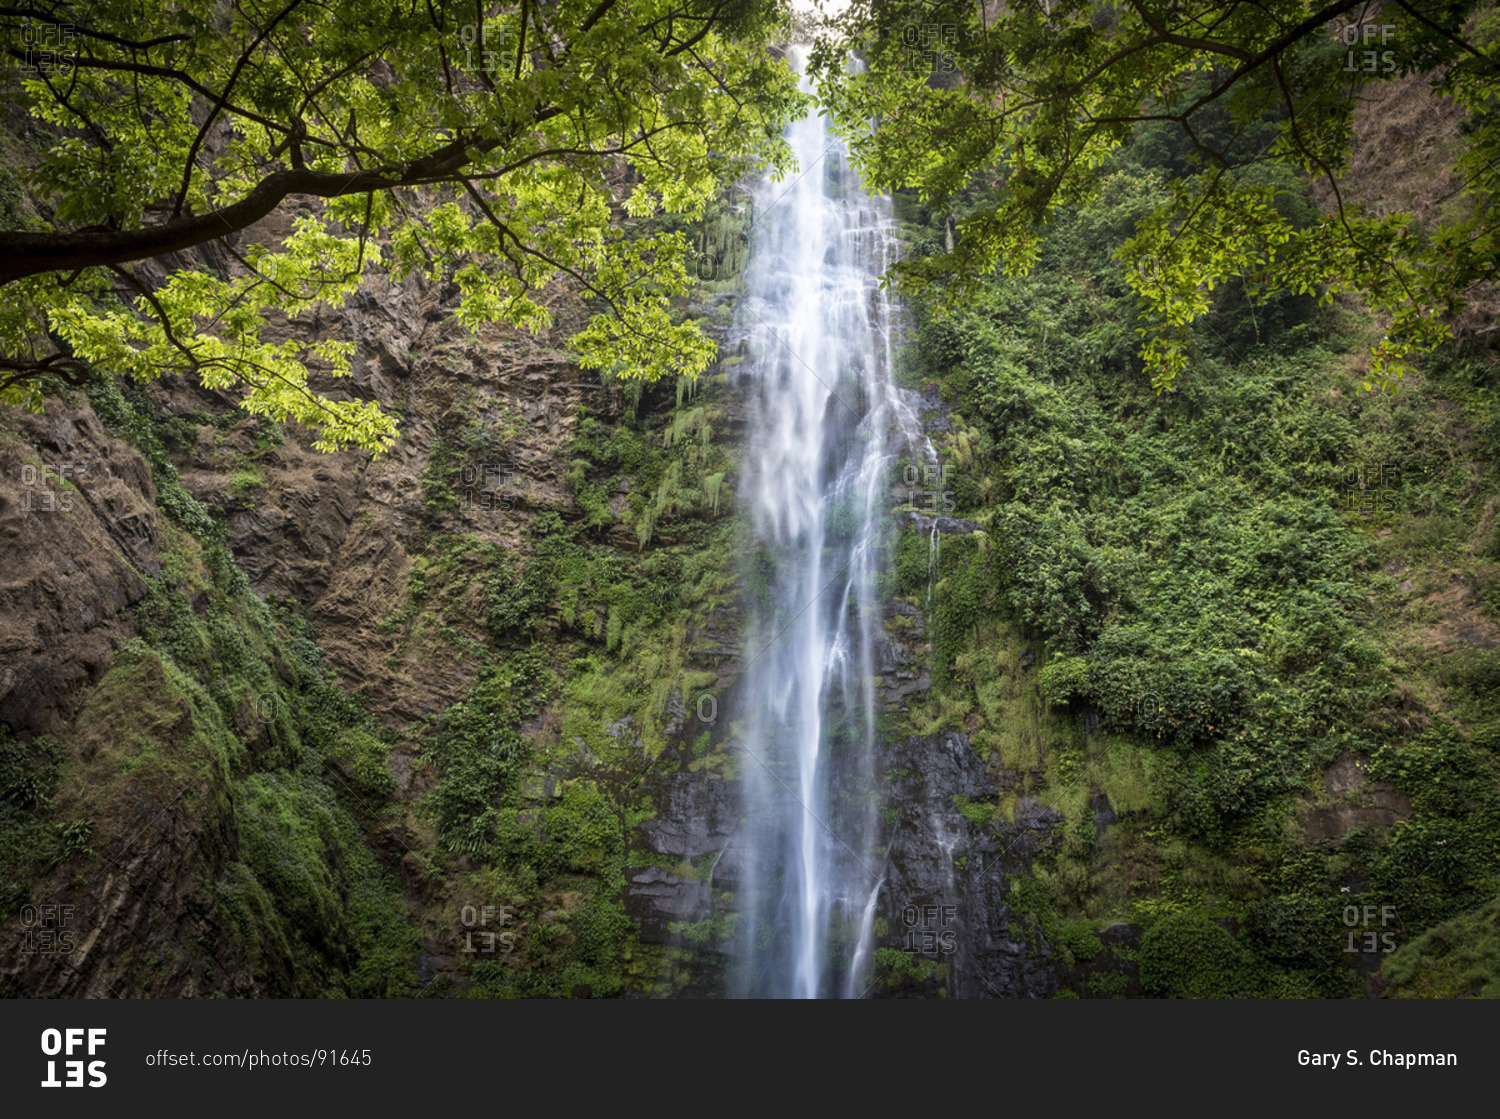 Wli waterfalls in Ghana, Africa